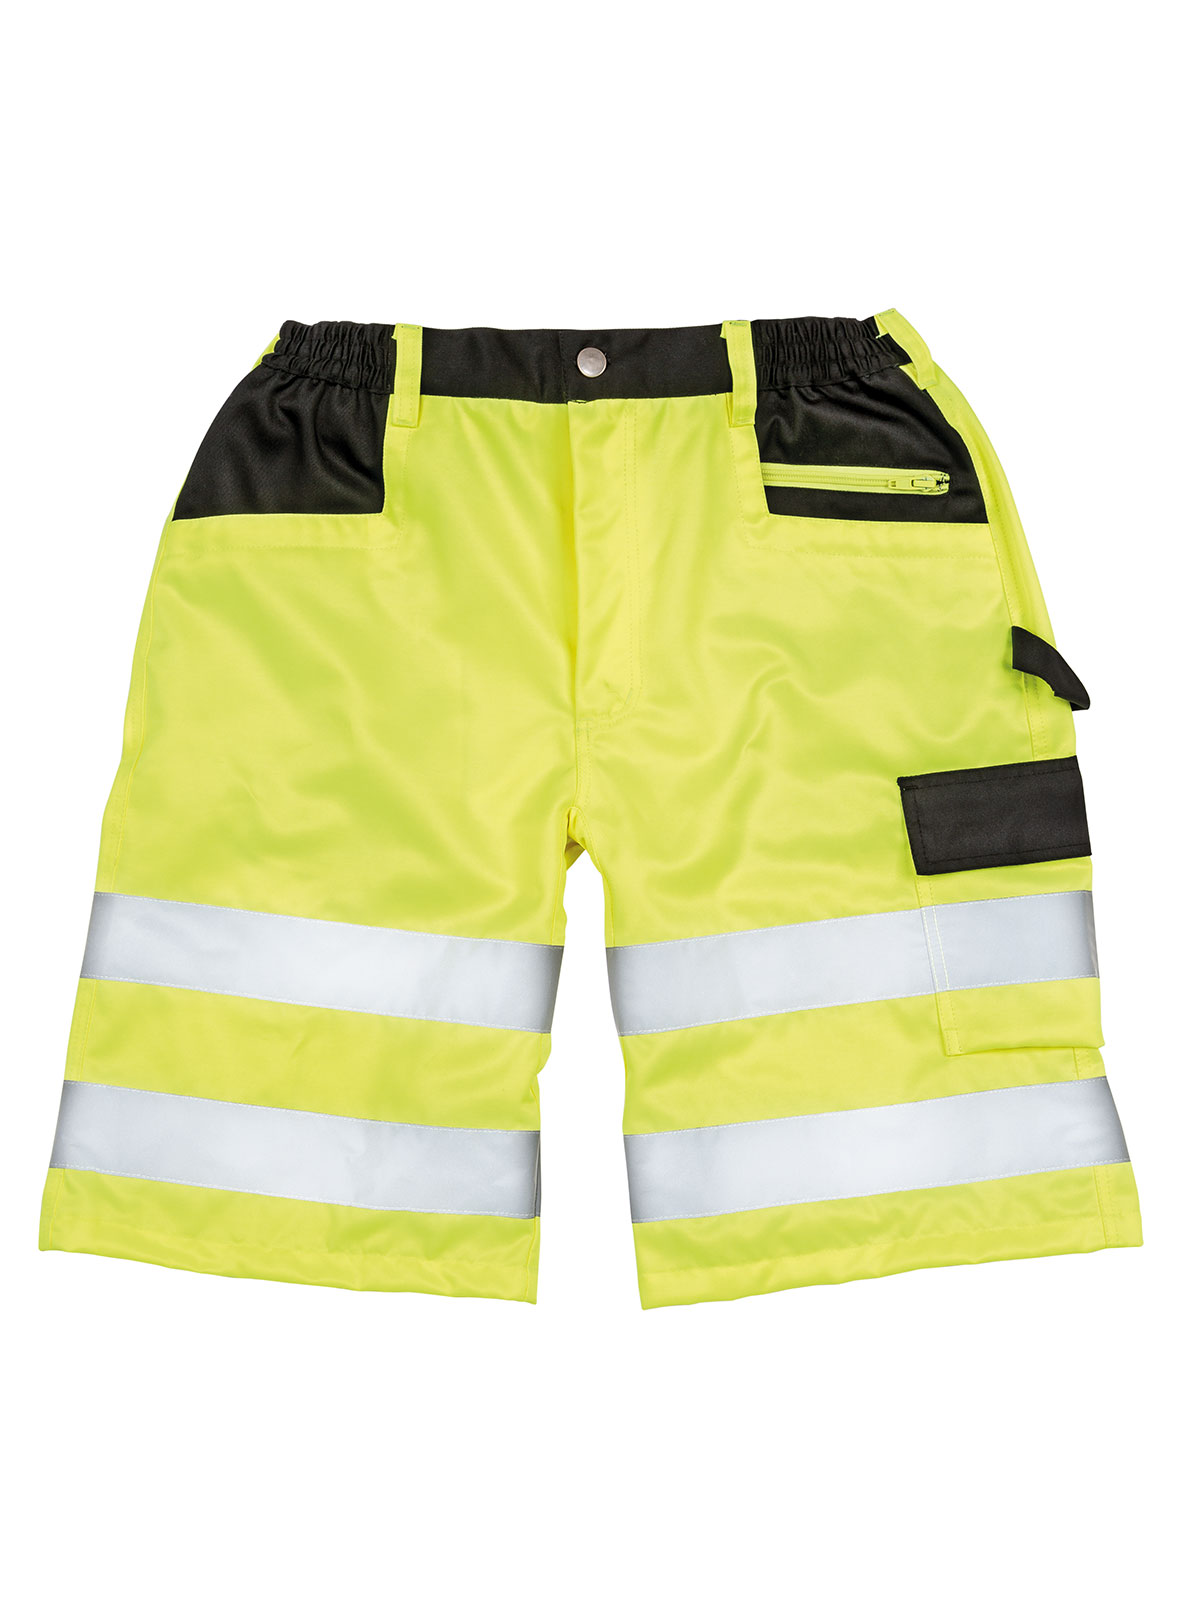 safety-cargo-shorts-yellow.webp